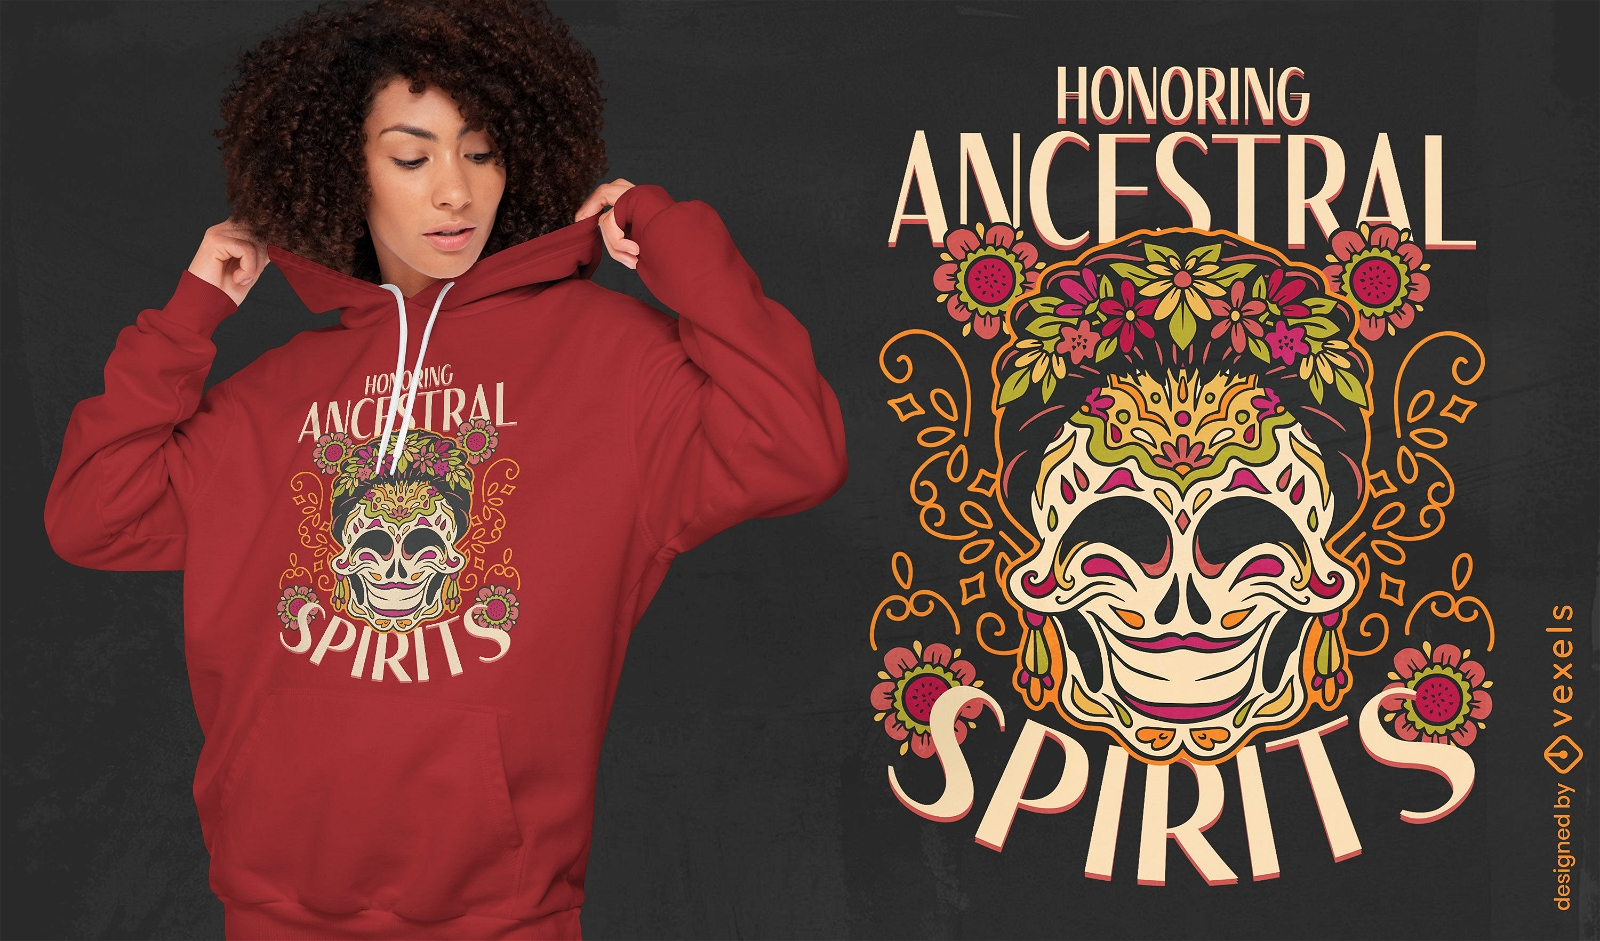 Honrando el diseño de camiseta de espíritus ancestrales.